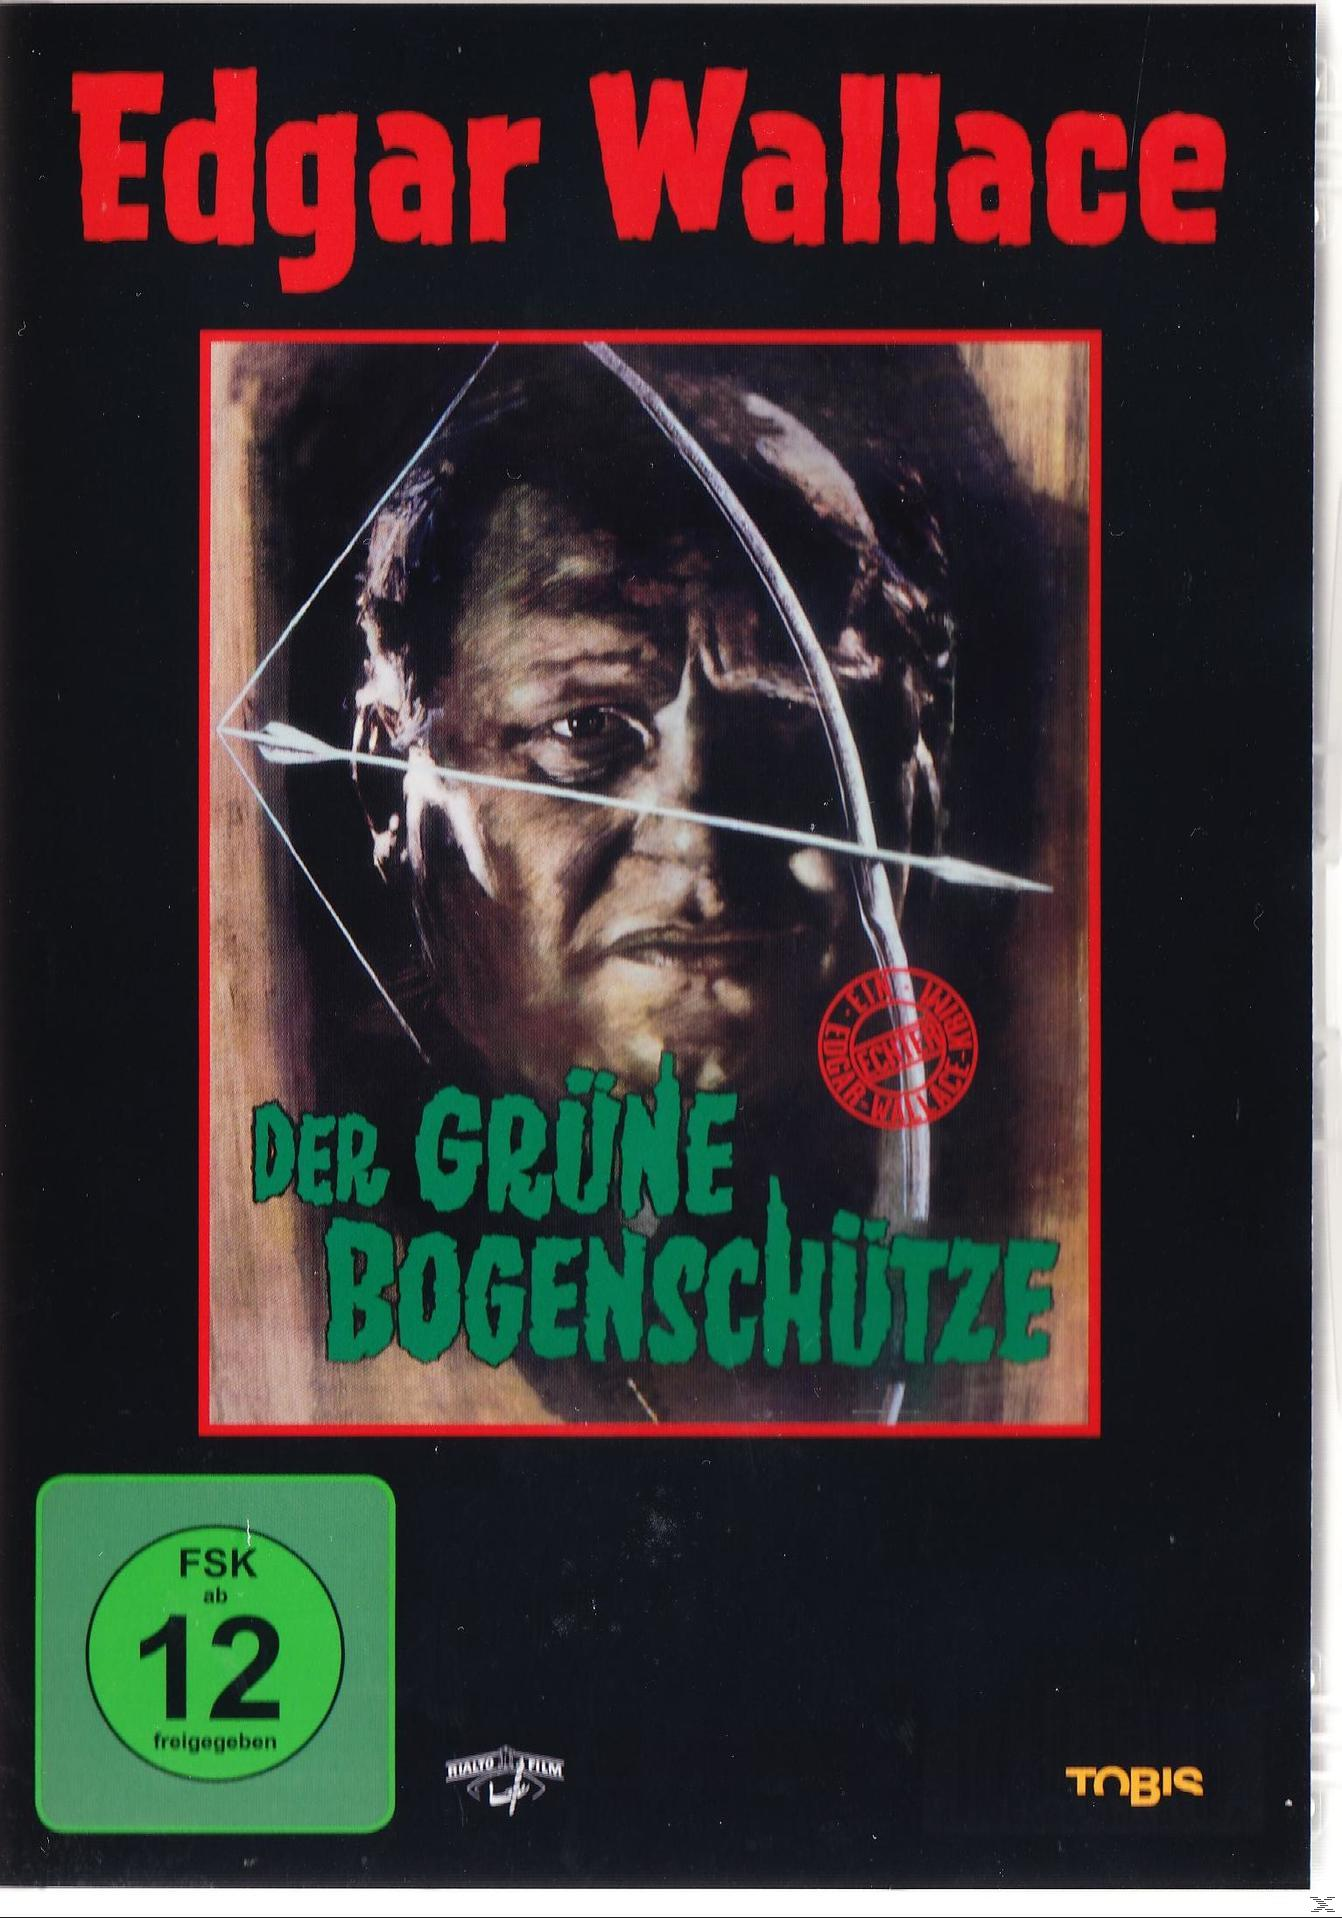 Edgar Wallace - Der DVD grüne Bogenschütze